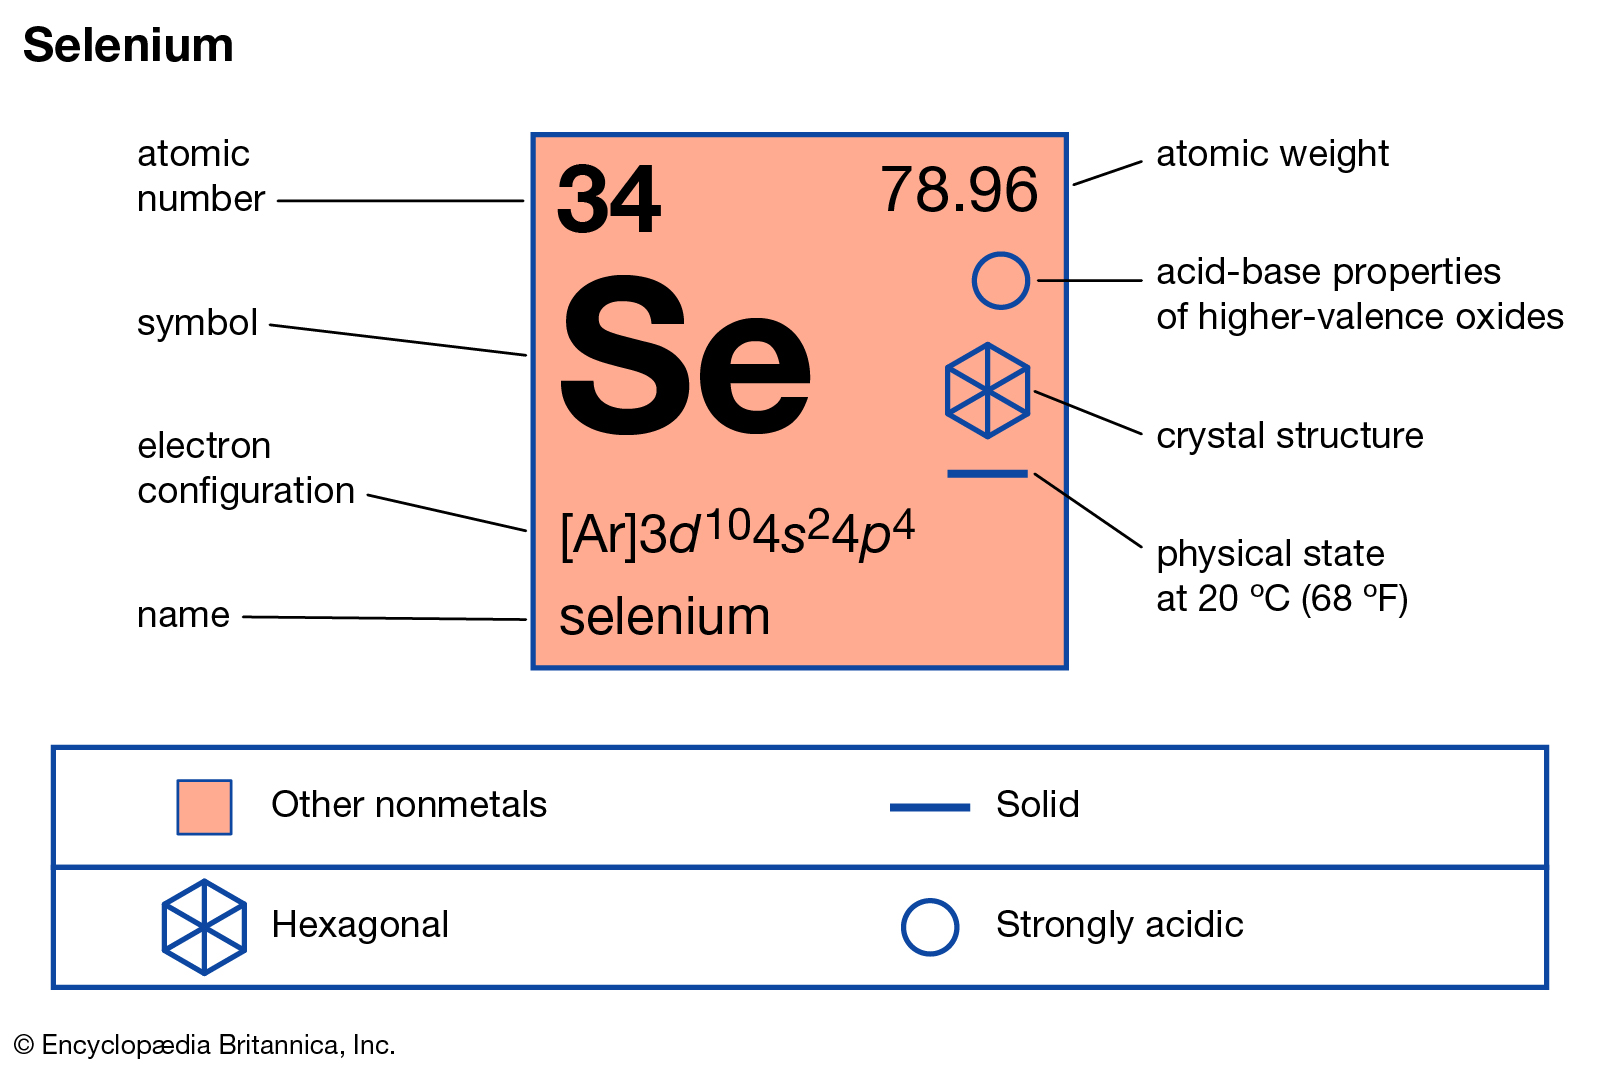 Зарядовое число радия. Селен элемент. Se селен. Atomic nubmers. Atomic numbers.